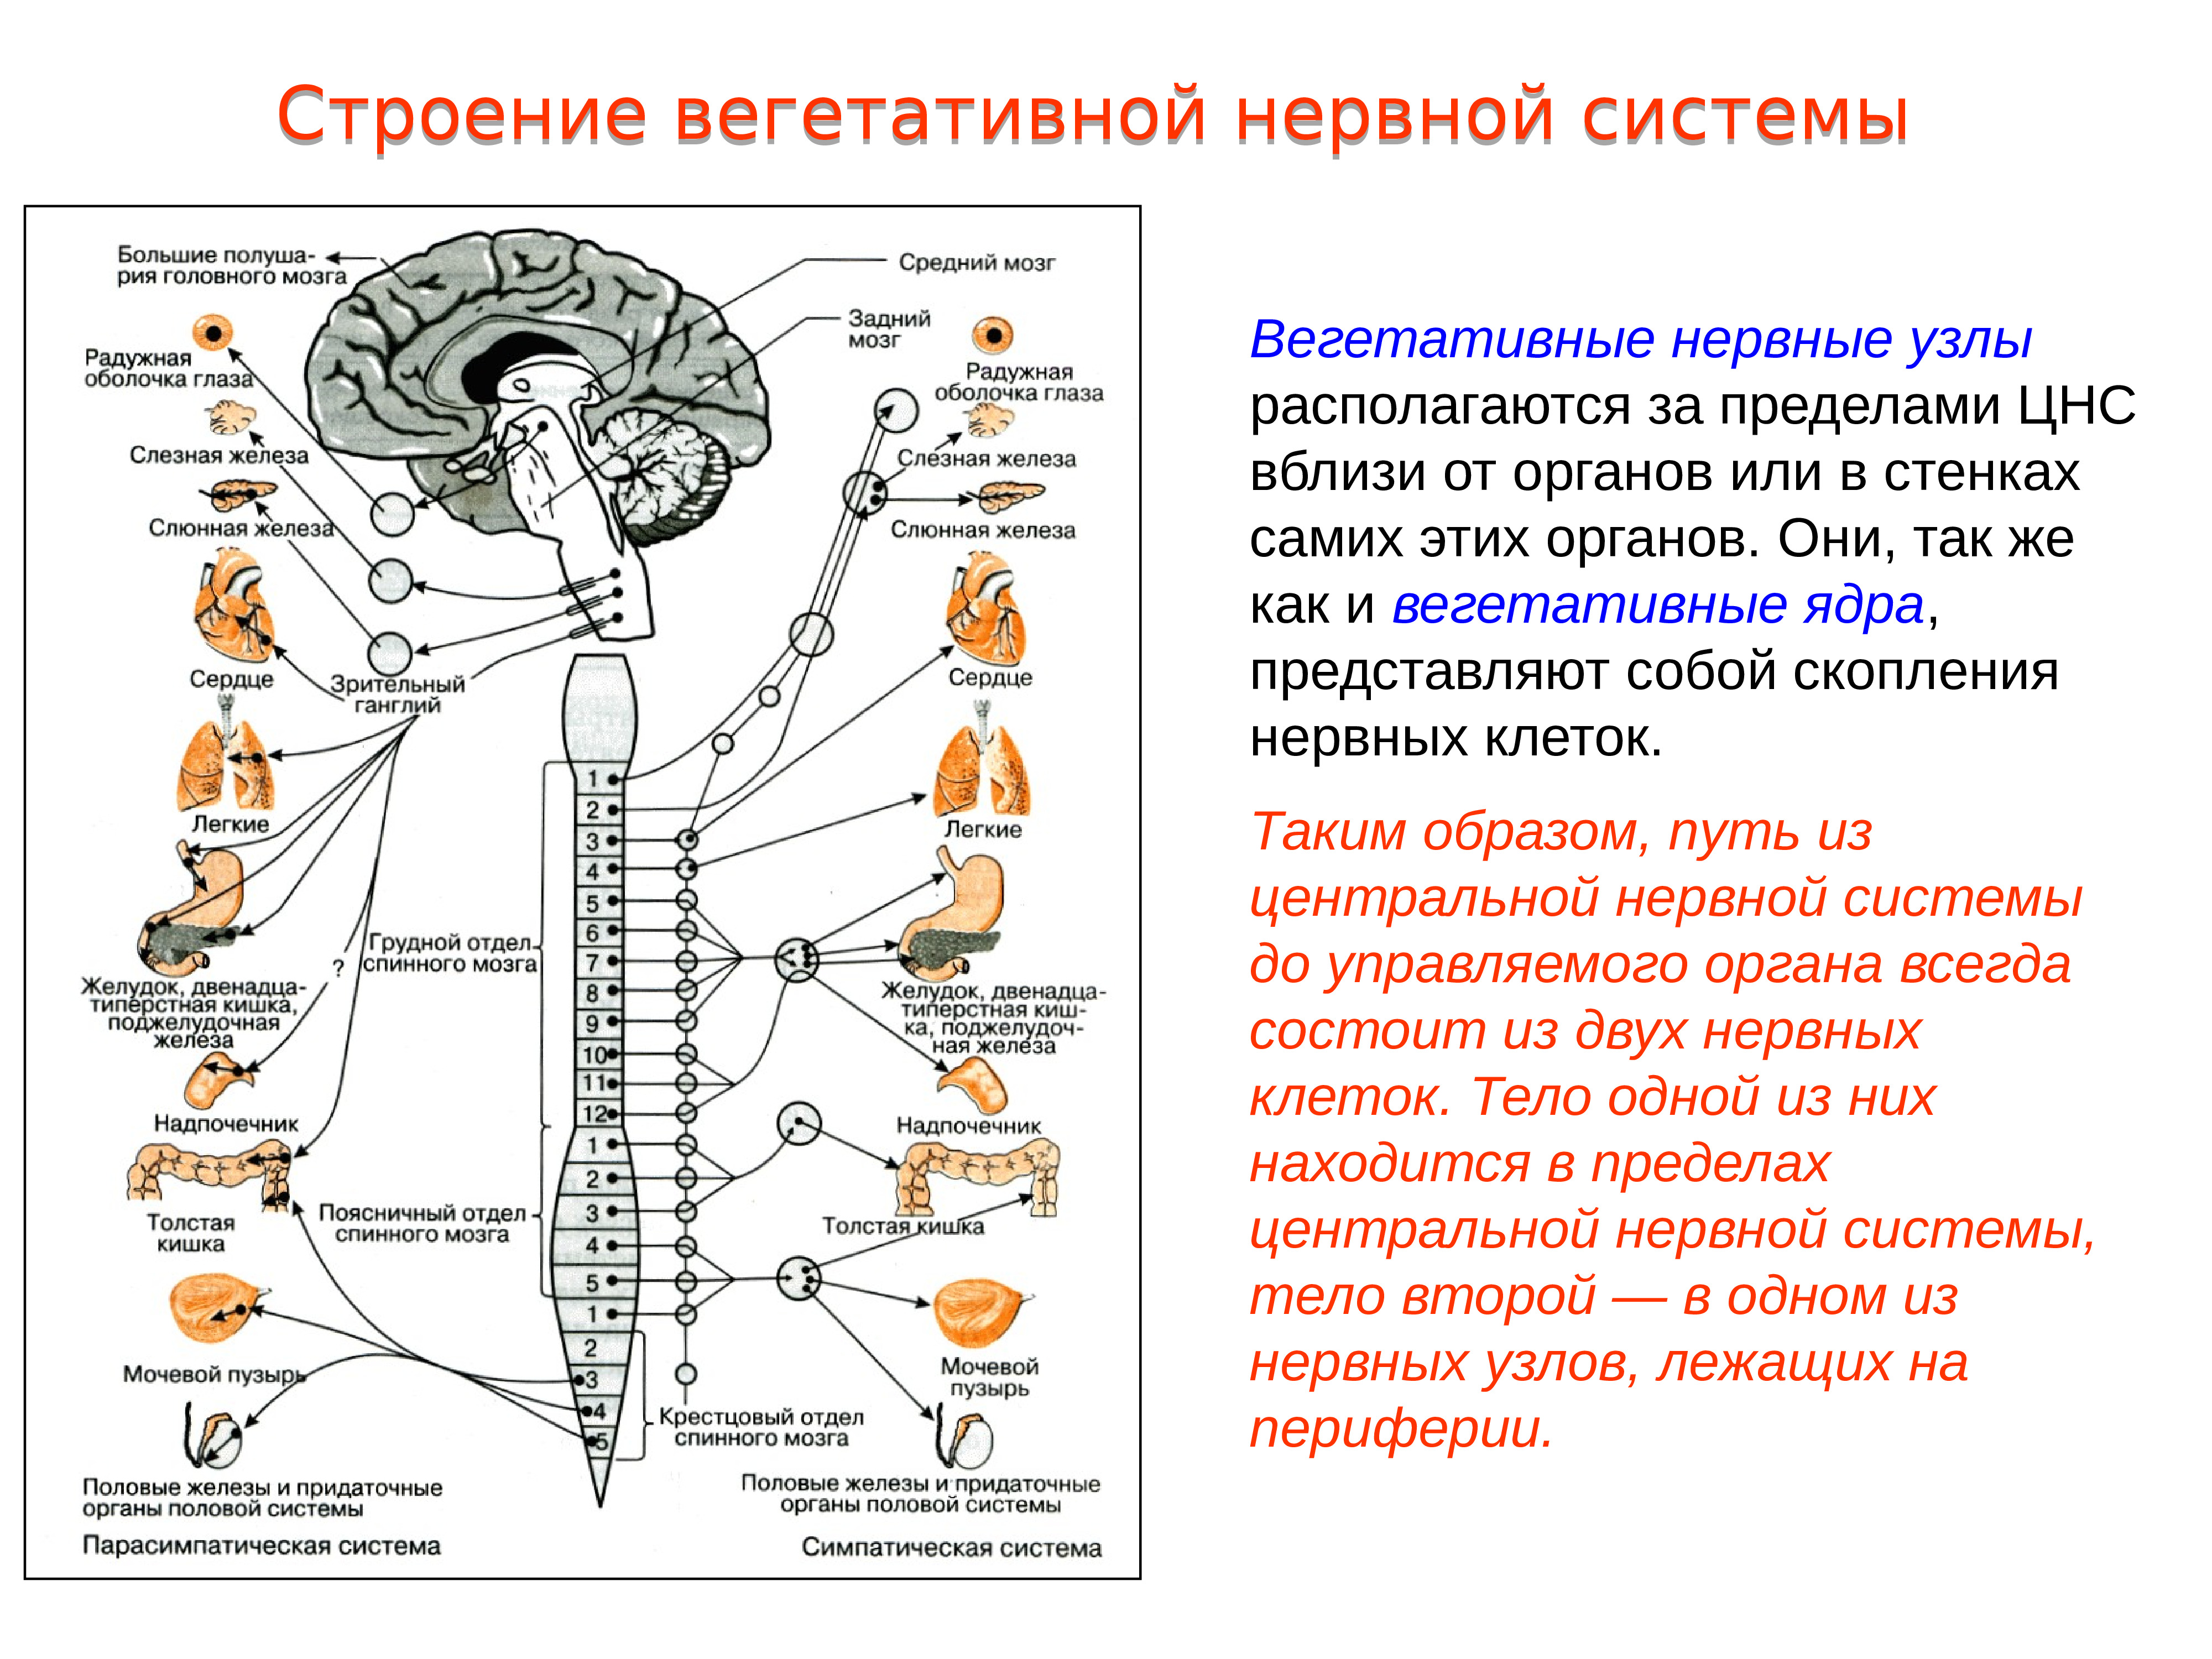 Центральный отдел нервной системы спинной мозг. Строение вегетативного нервного узла. В Центральном отделе ядра вегетативной нервной системы. Строение вегетативной системы с нервными узлами. Вегетативная нервная система схема спинного мозга.